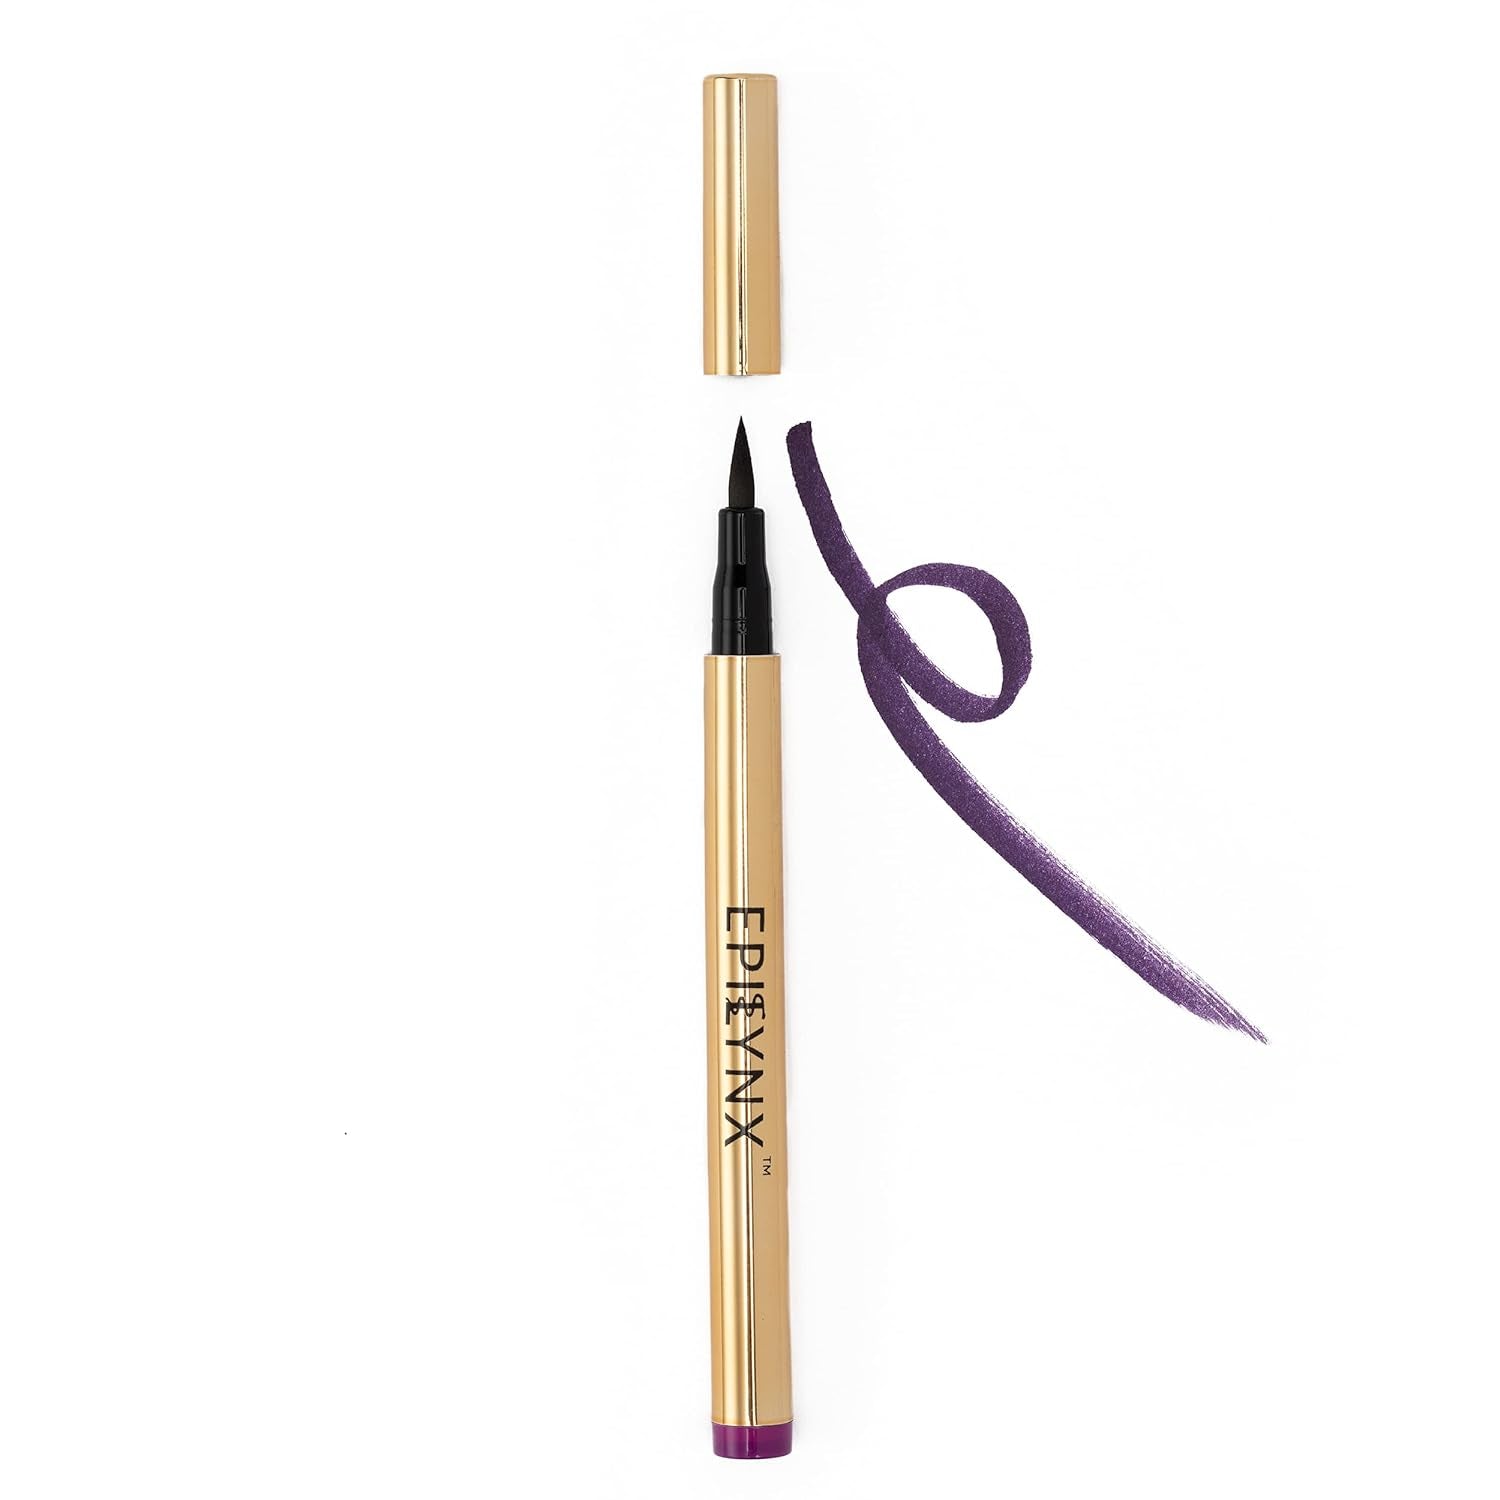 Vegan Gluten & Allergen Free Liquid Eyeliner Pencil | Long Lasting Waterproof Eyeliner with Precision Tip | 2Ml | Purple by Dr. Liia